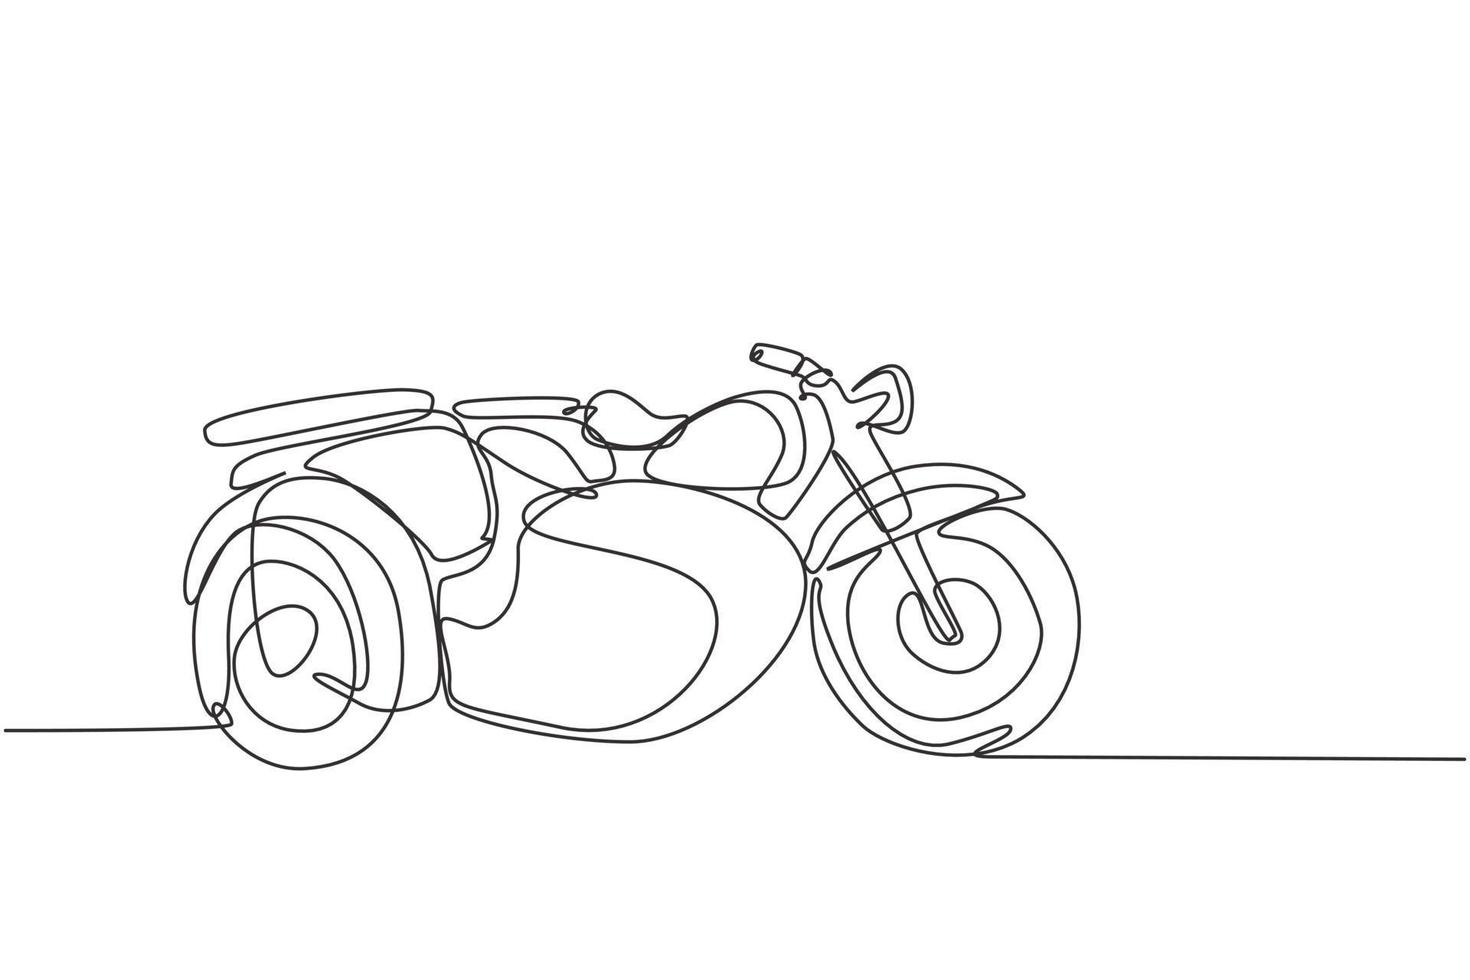 un dessin au trait continu d'une vieille moto vintage rétro avec side-car. Concept de transport moto classique dessiner une seule ligne illustration vectorielle de conception graphique vecteur